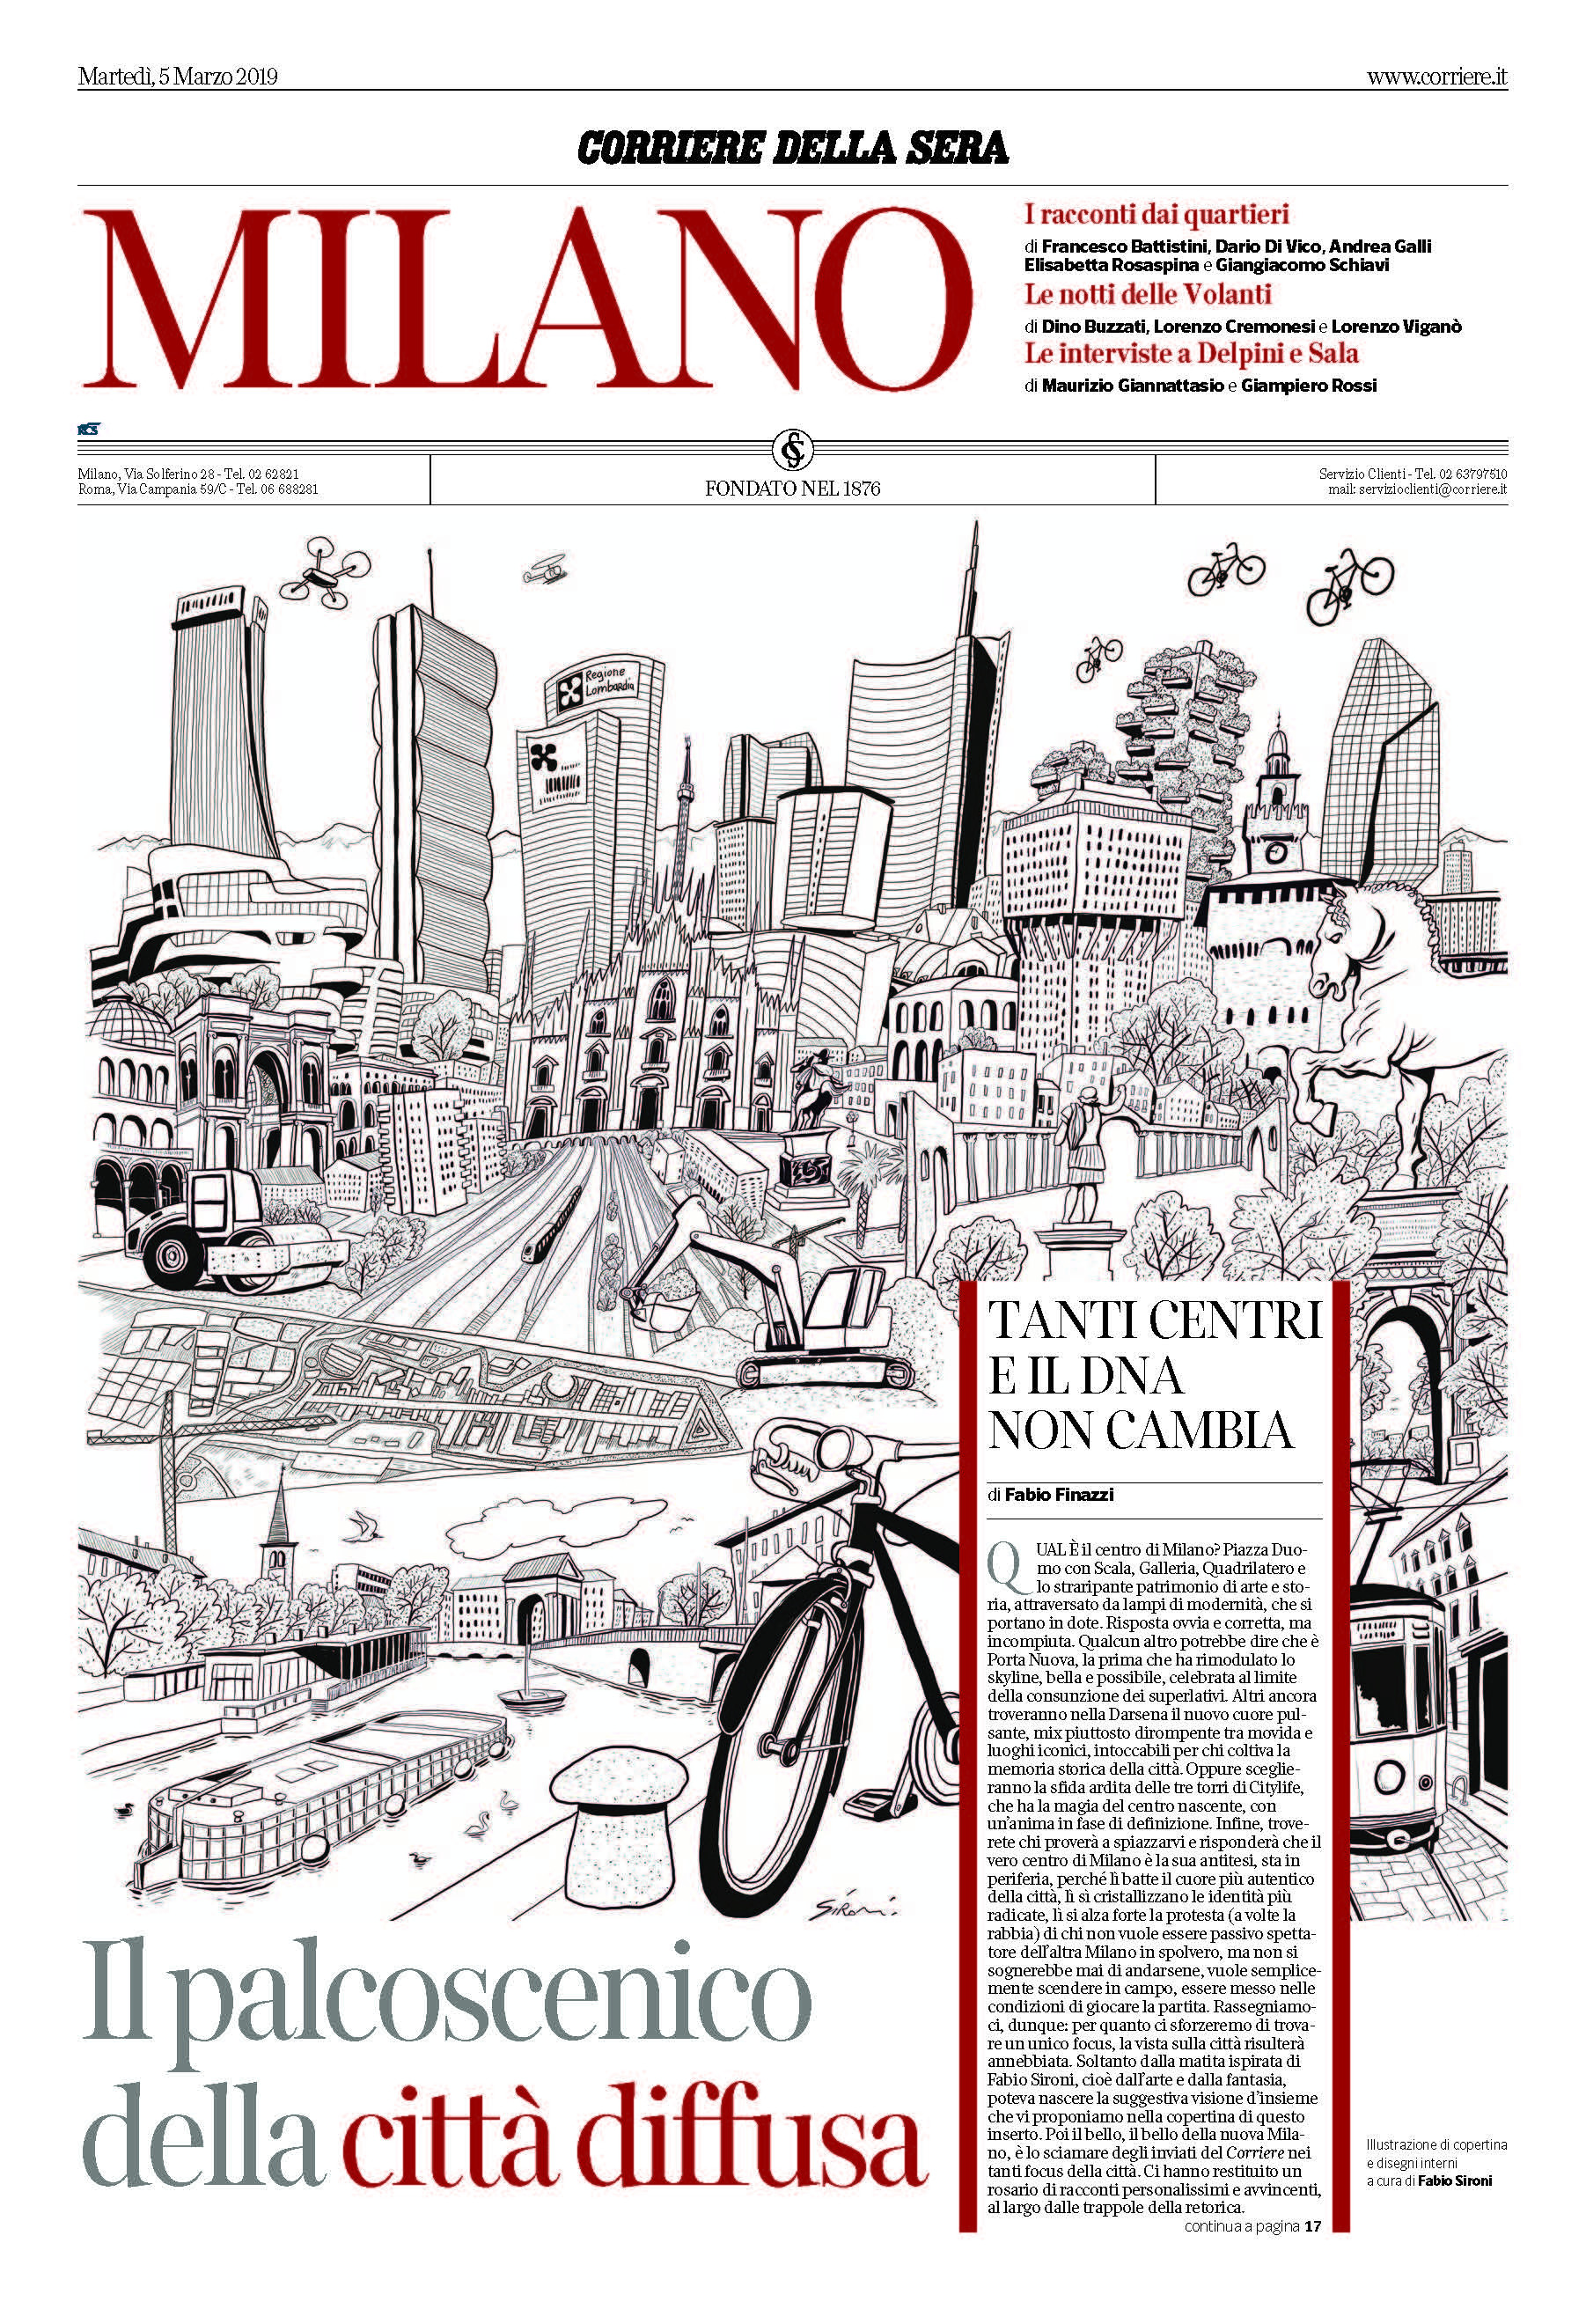 Corriere Milano, da mercoledì 6 marzo in edicola con veste grafica, contenuti e 4 format nuovi